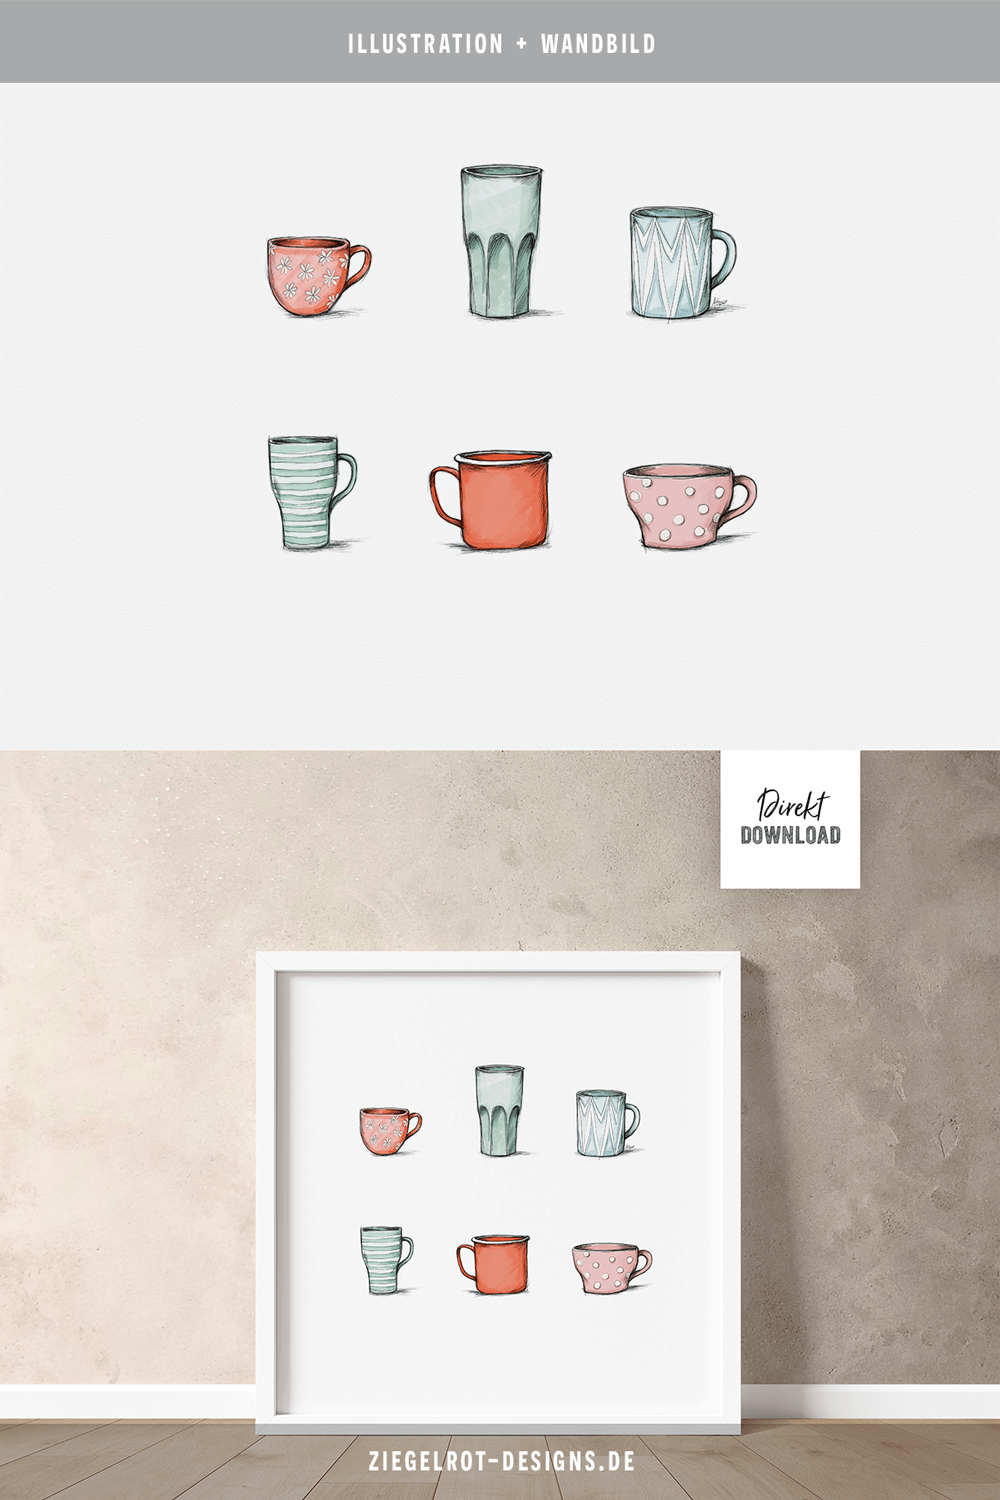 Illustration als Motiv für Wandbild mit bunten Kaffeebechern als Download zum Selbstdrucken